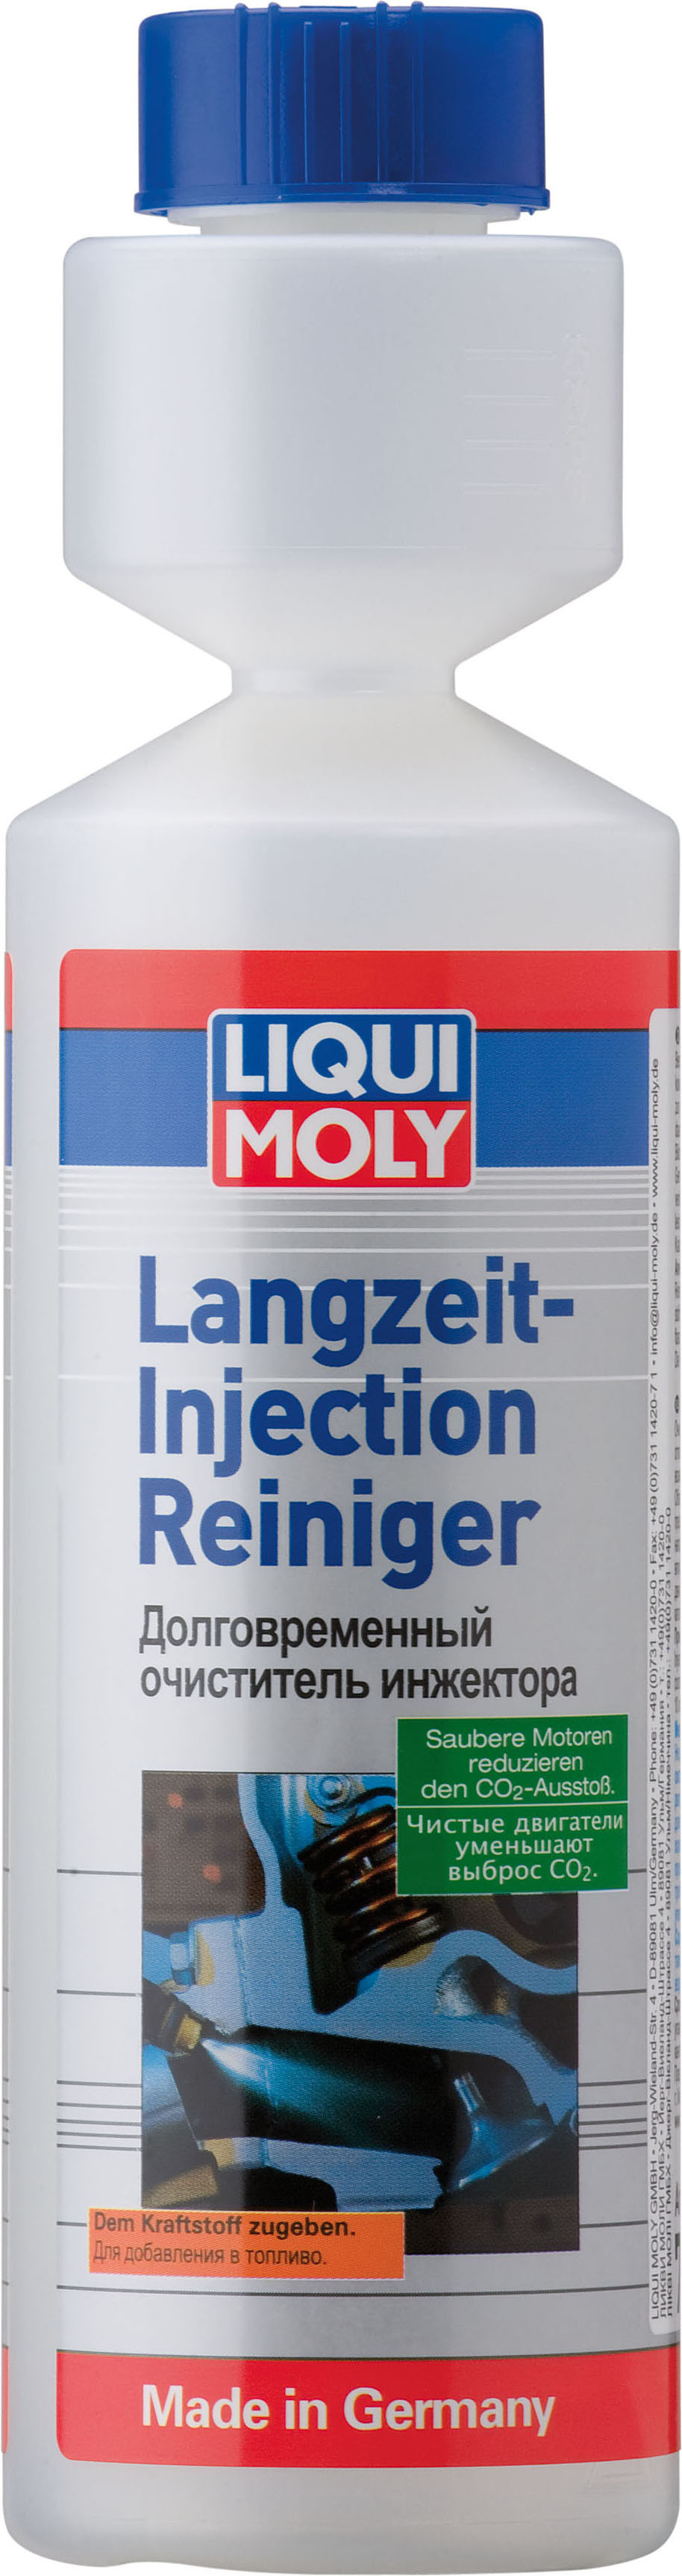 Долговременный Очиститель Инжектора - Langzeit-Injection Reiniger